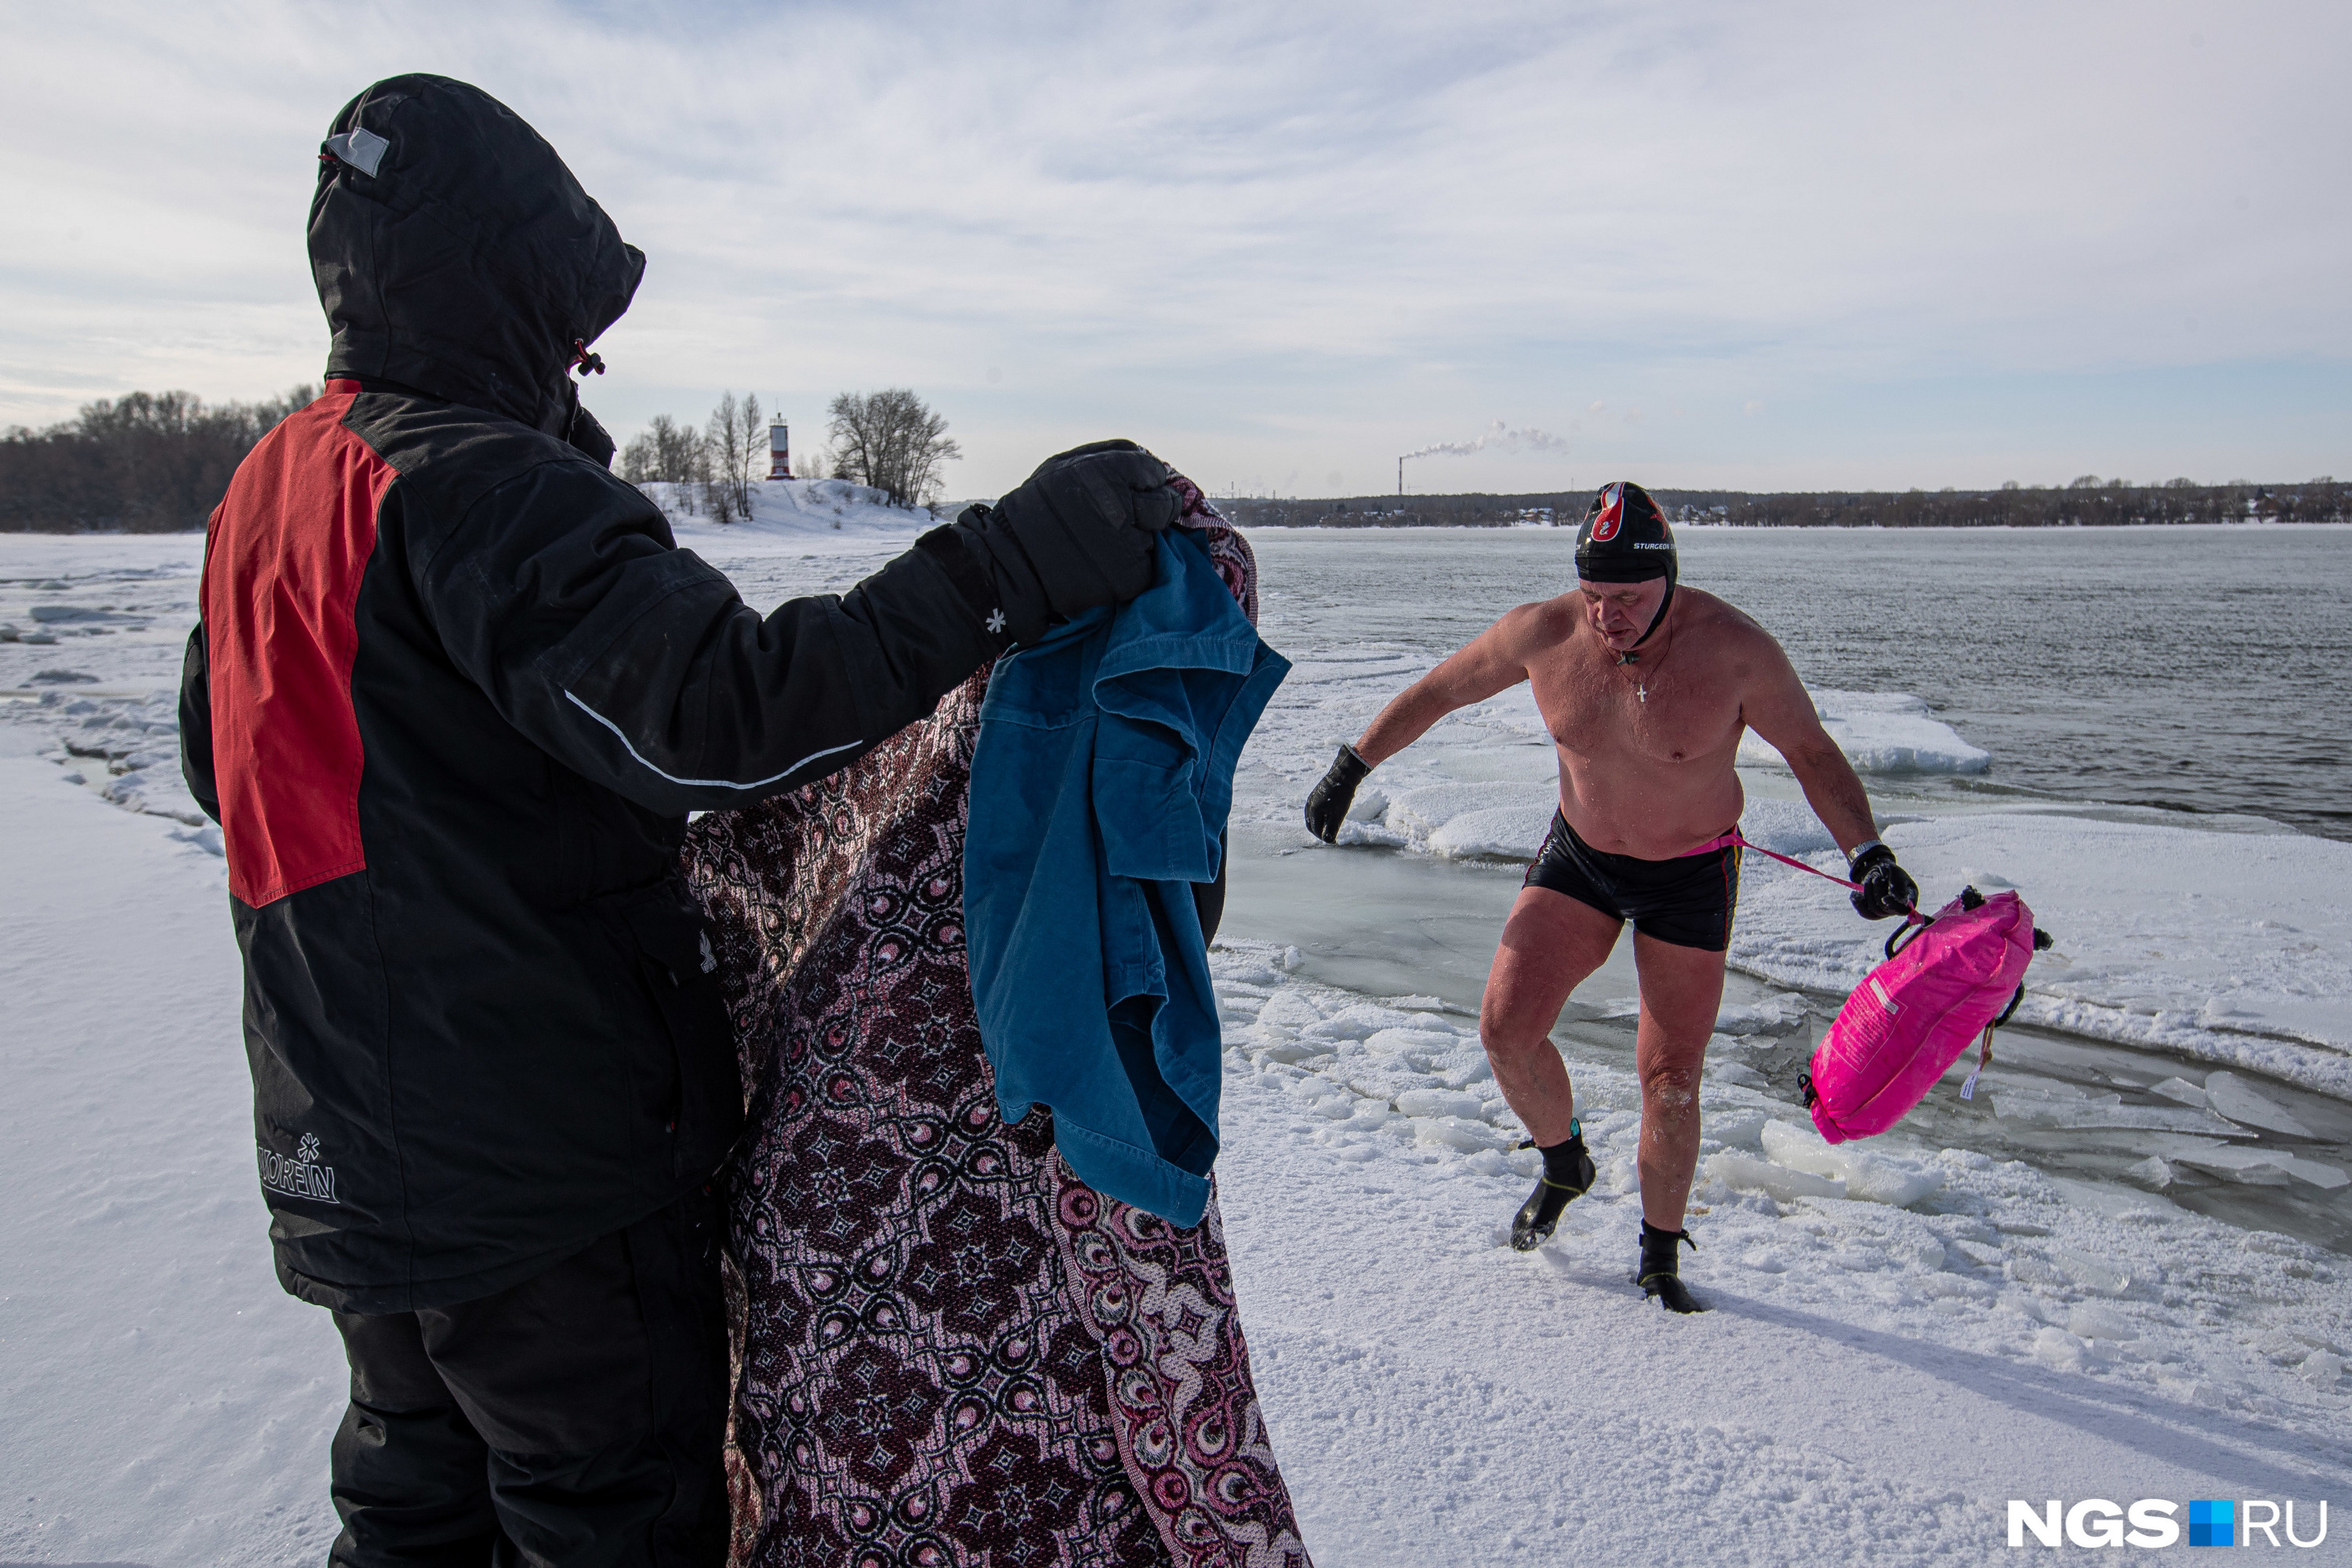 Марк Москвин постепенно увеличивает время своего нахождения в холодной воде